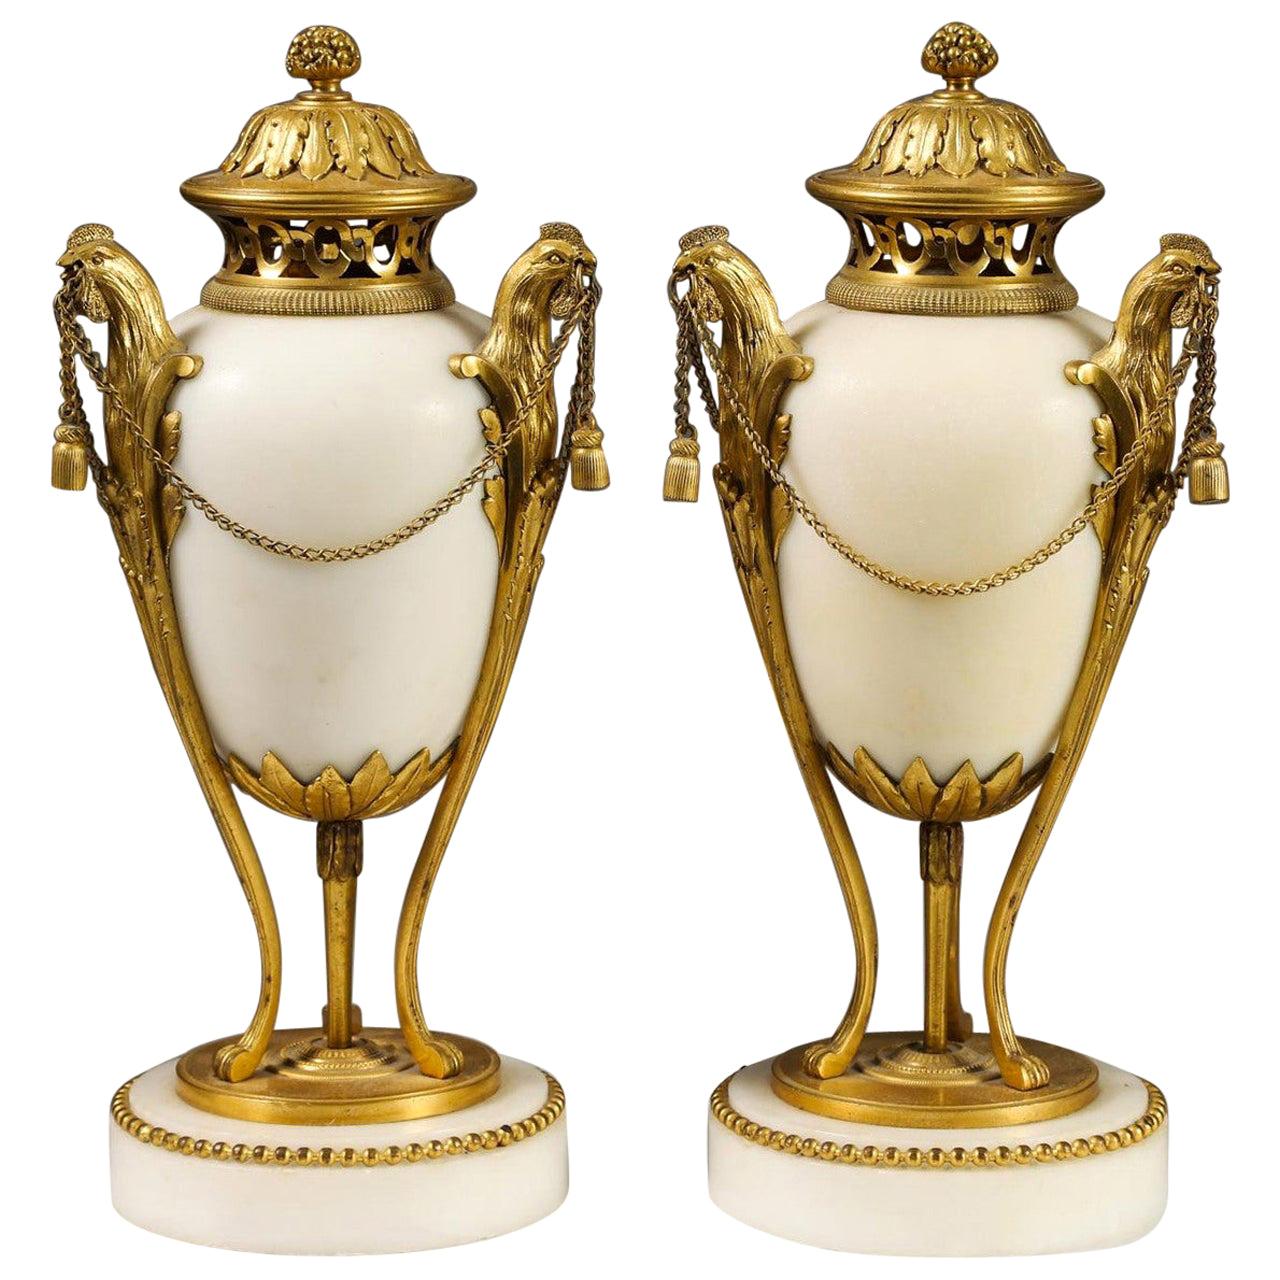 Très belle paire d'urnes recouvertes de bronze doré et de marbre blanc